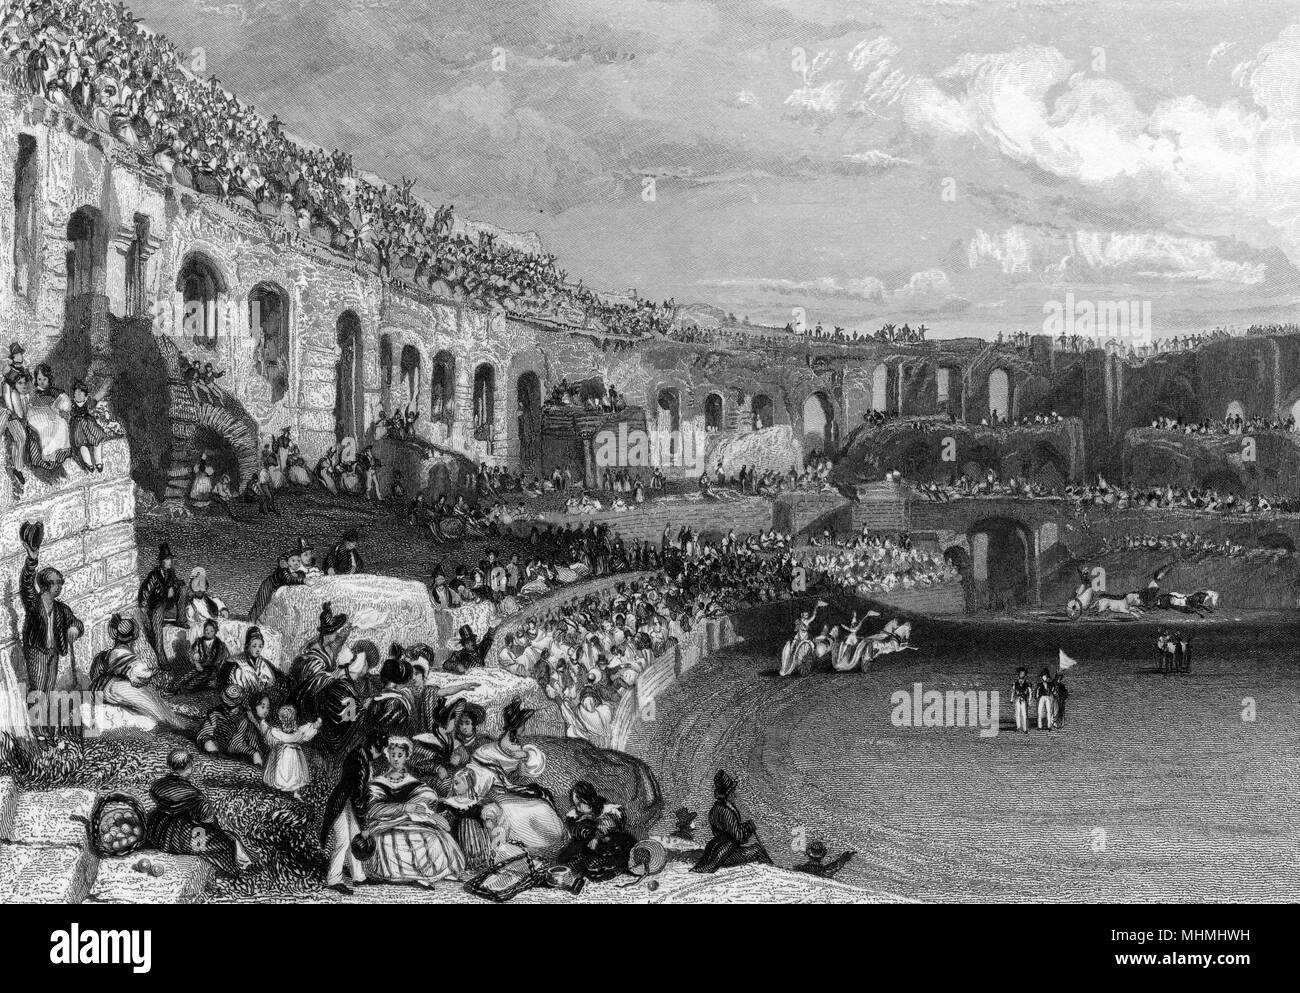 Les spectateurs à regarder une course de chars modernes dans l'amphithéâtre romain de Nîmes, France, 1835 Date : 1835 Banque D'Images